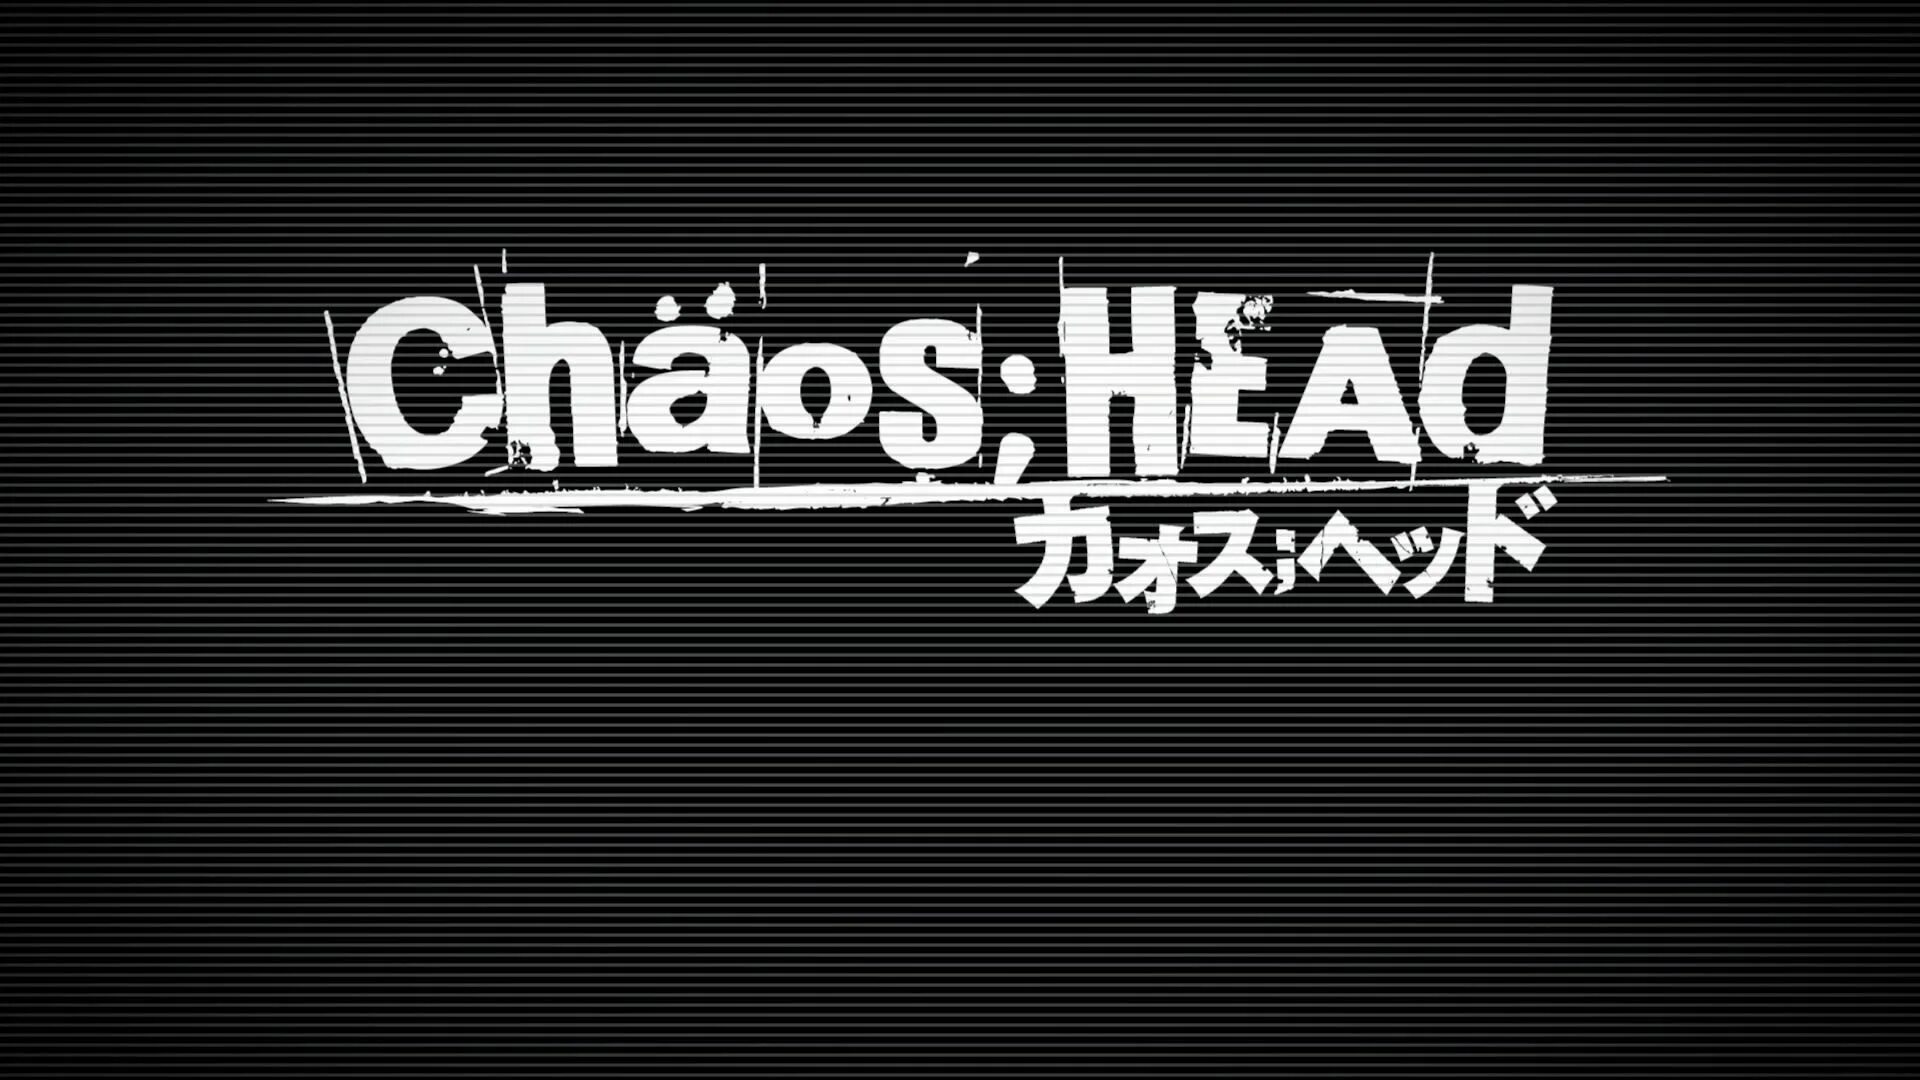 Chaos tricks. Chaos;head. Chaos head logo. Chaos head Noah logo. Chaos Tricks лого.